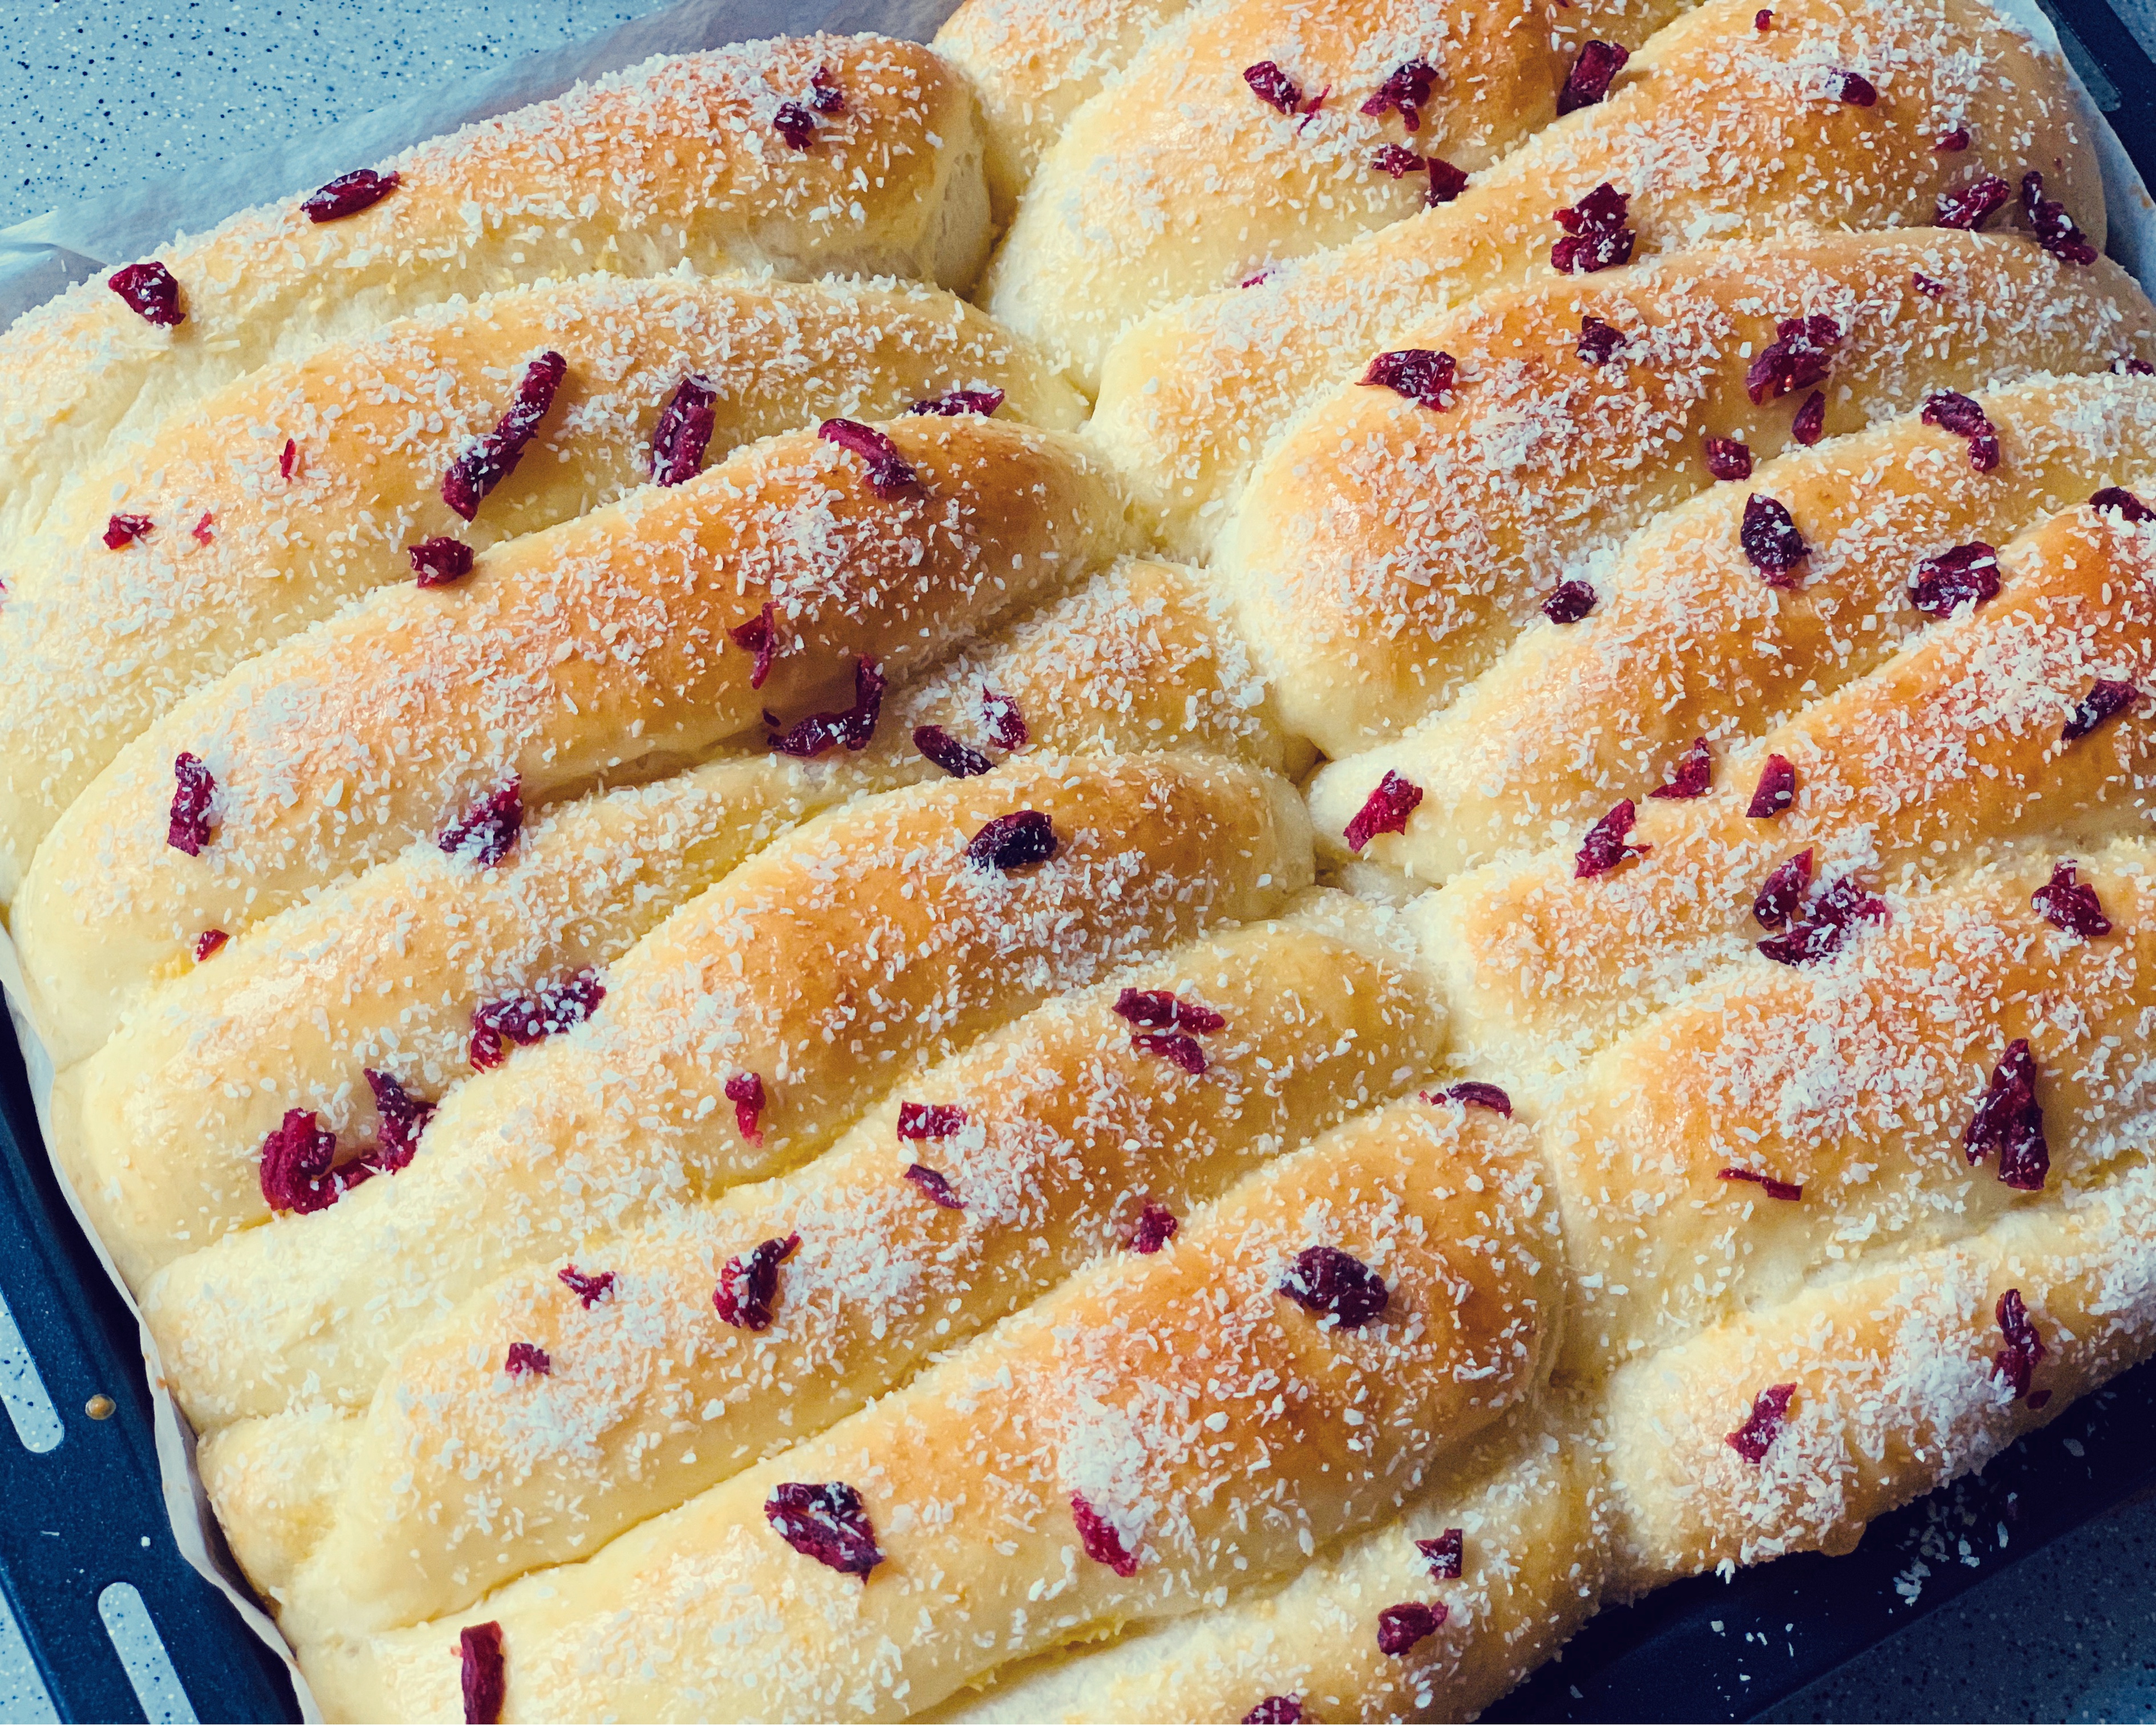 松软拉丝的面包机版蔓越莓雪山排包